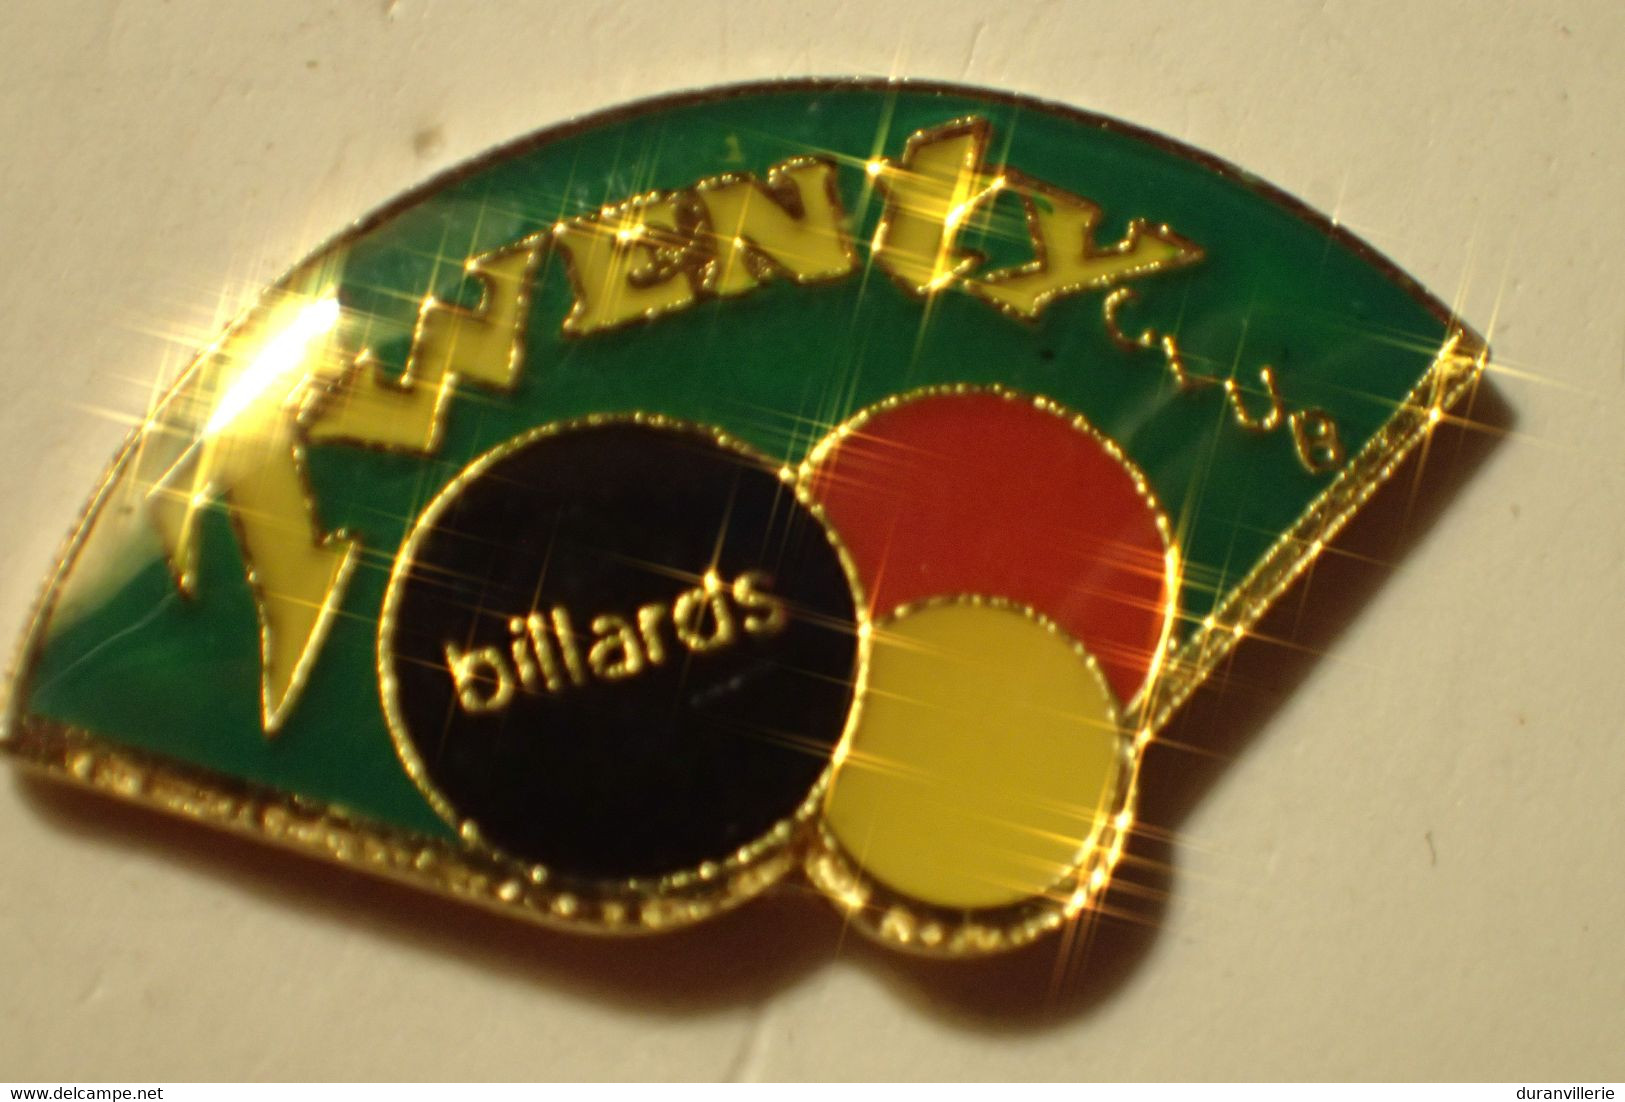 Billard Twenty Club - Billiards